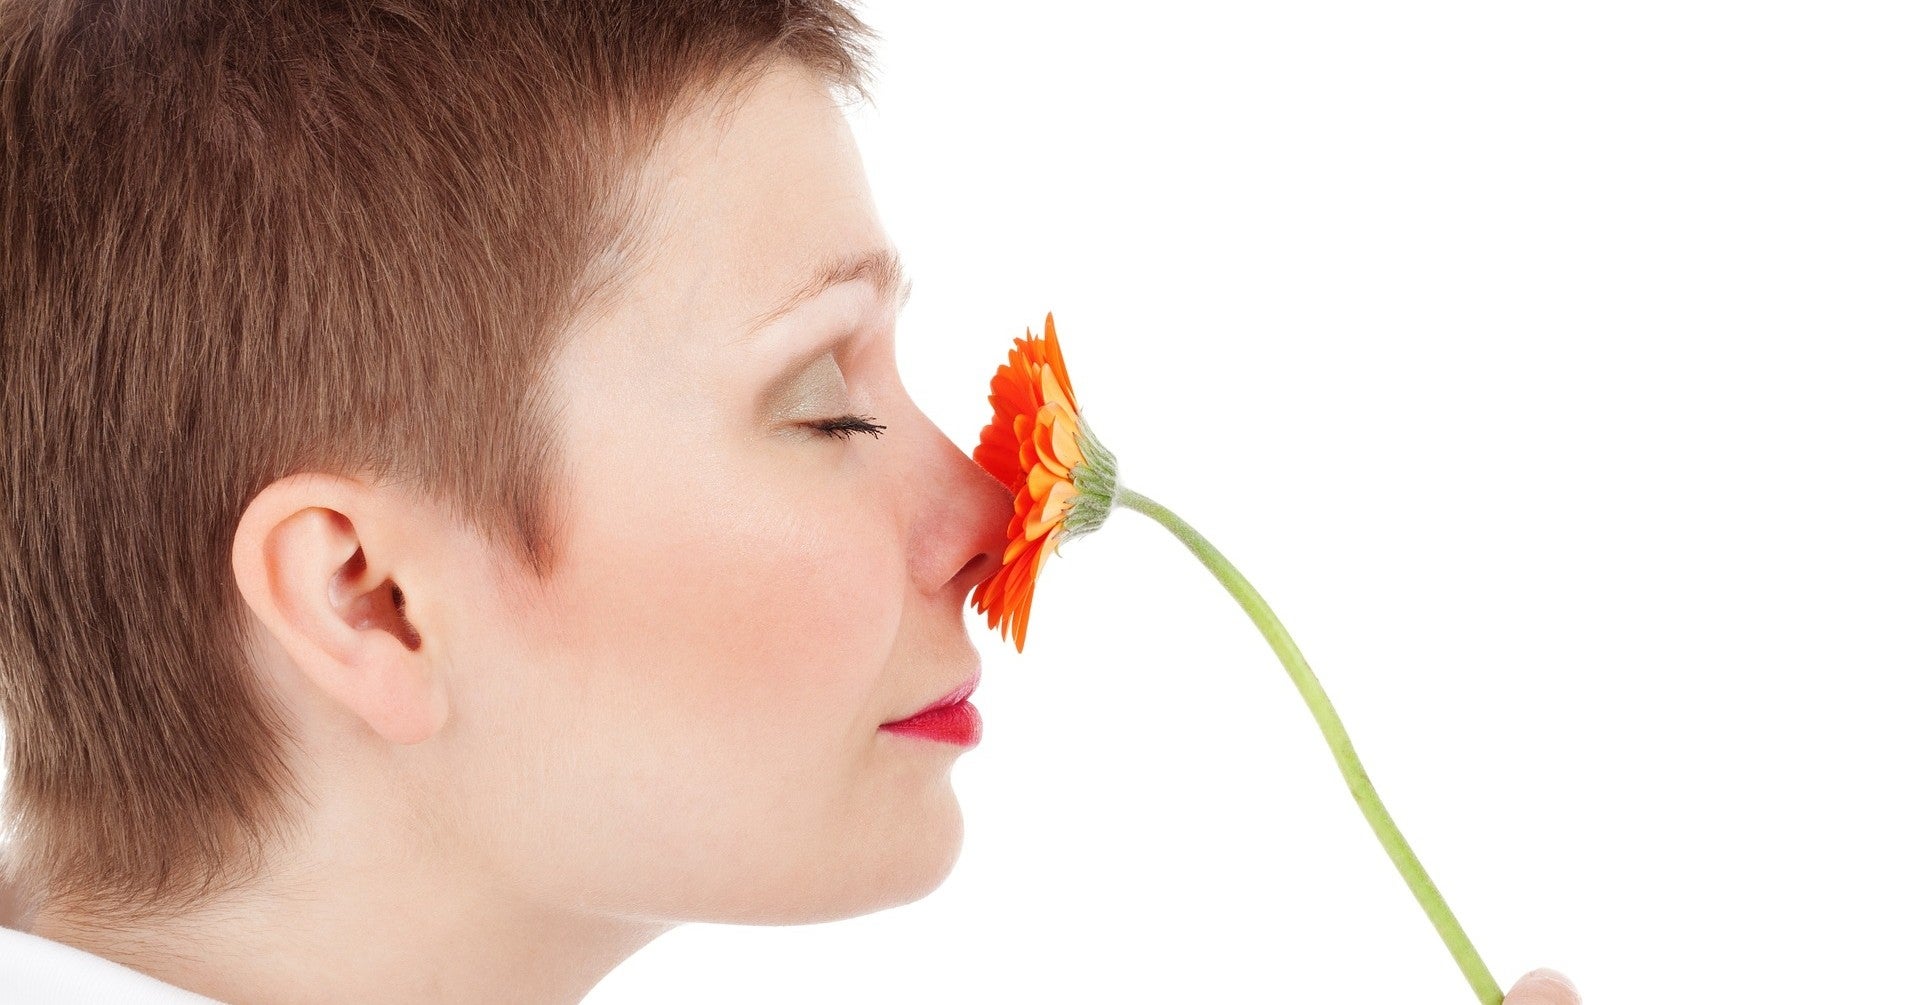 Olfacción Creativa. El olfato para mejorar la voz y desarrollar potencialidades de actuación vocal